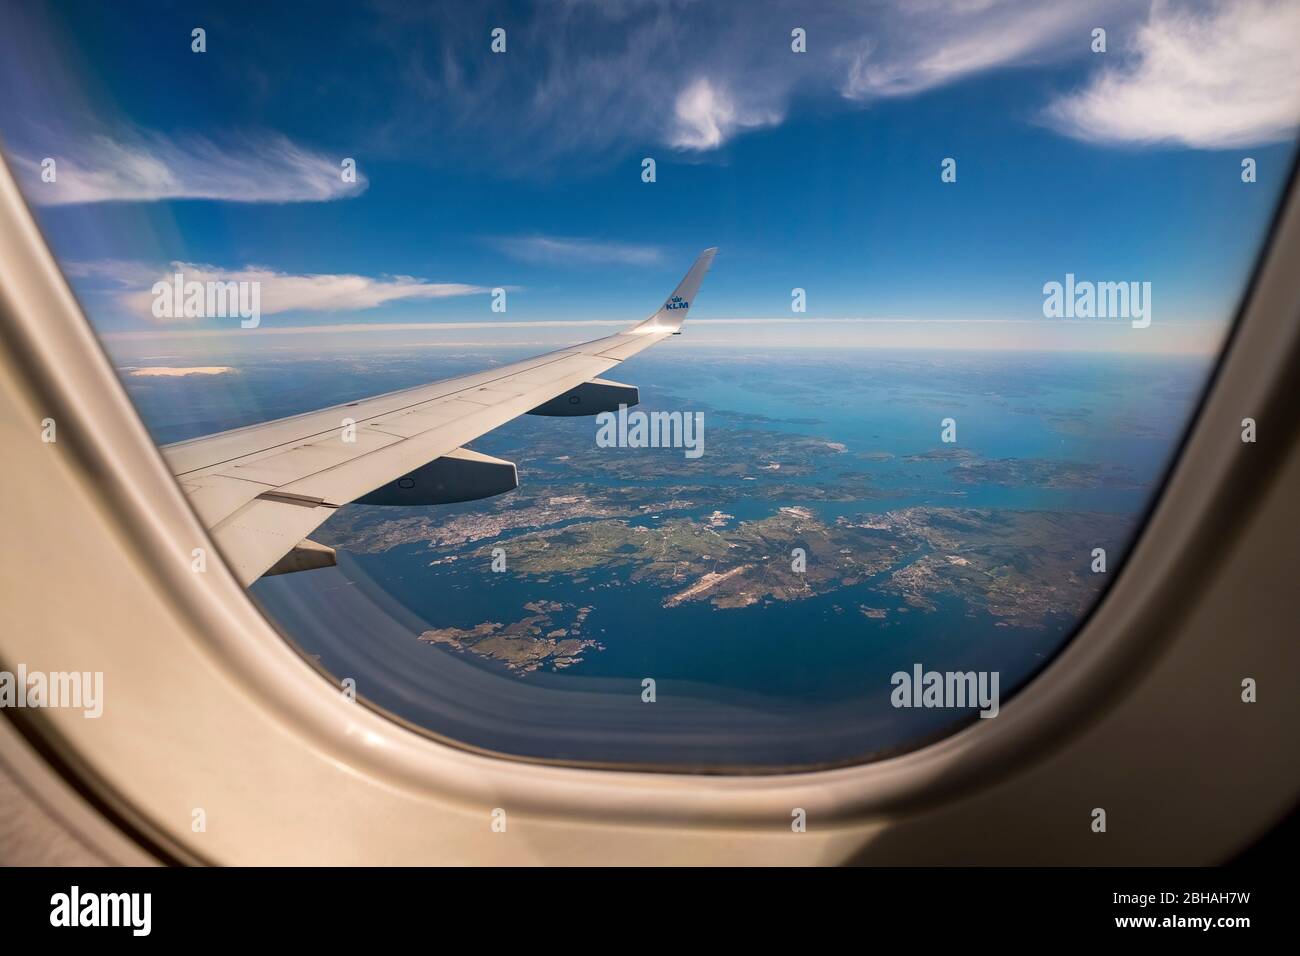 Approccio all'aeroporto di Bergen, vista dalle finestre degli aerei sulle ali, ai fiordi di Bergen, Blomsterdalen, Kokstad, Hordaland, Norvegia, Scandinavia, Europa Foto Stock